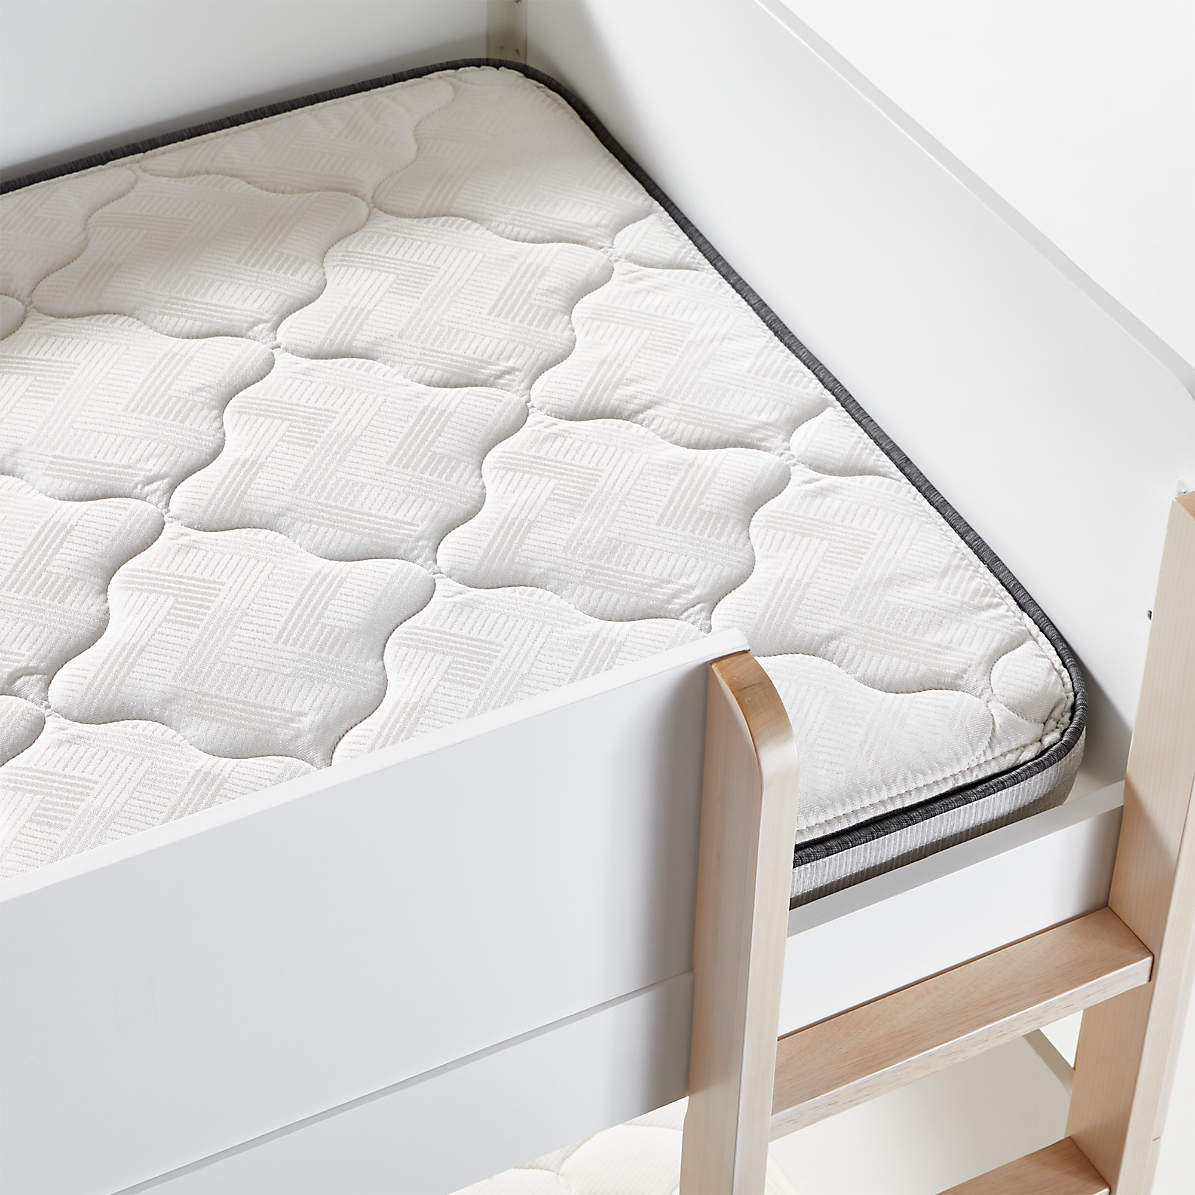 Simmons Beautyrest Foam Twin Bunk, Do Bunk Beds Use Twin Mattresses